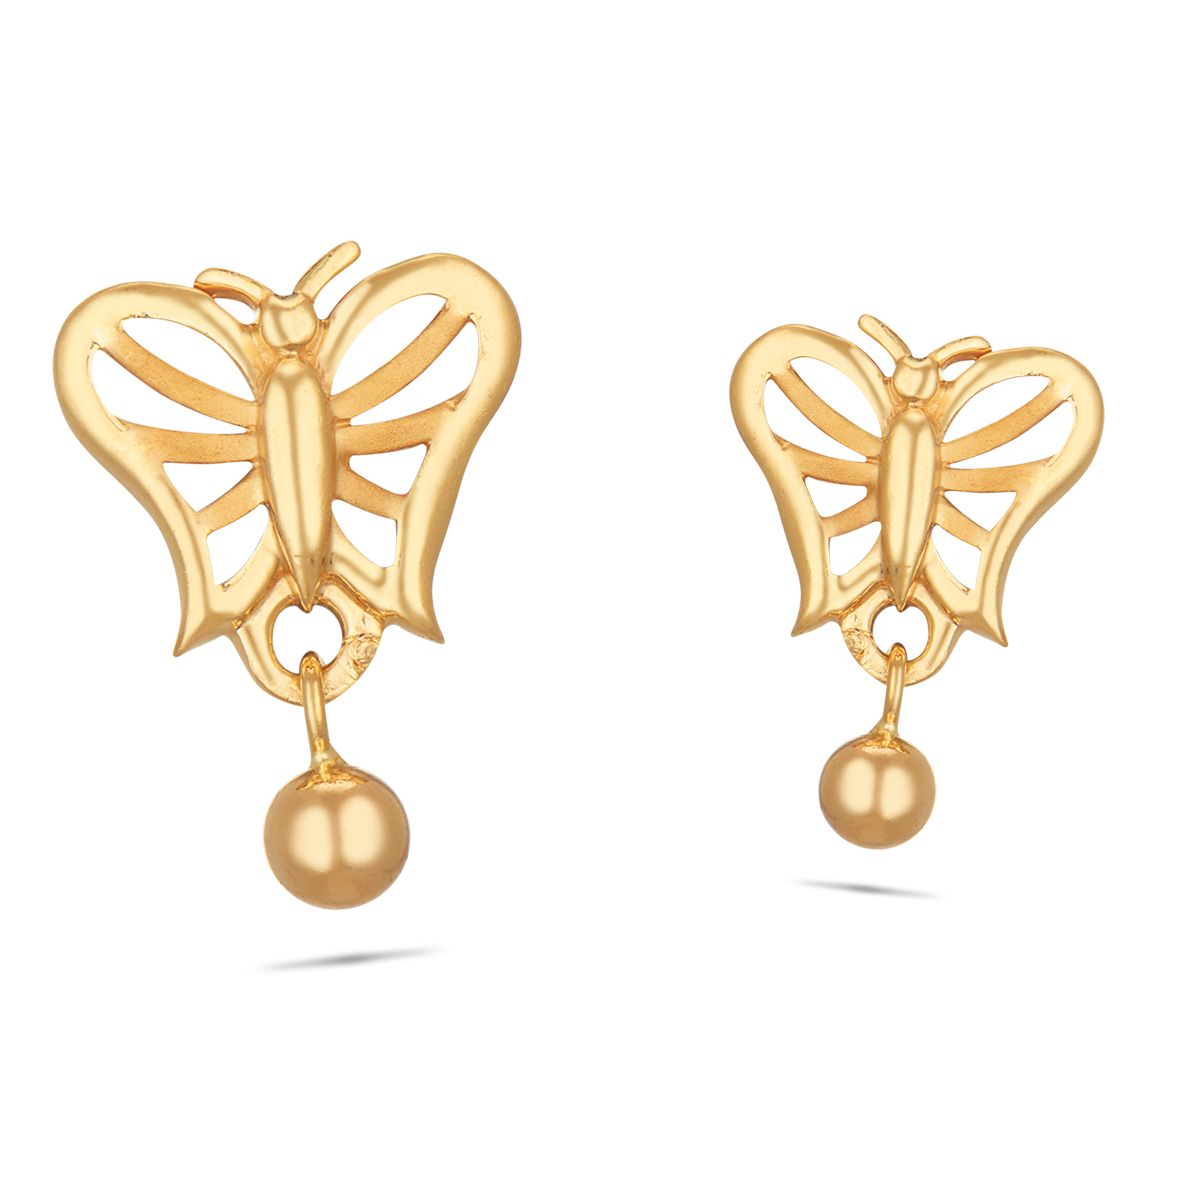 Buy GoldToned Earrings for Women by Youbella Online  Ajiocom